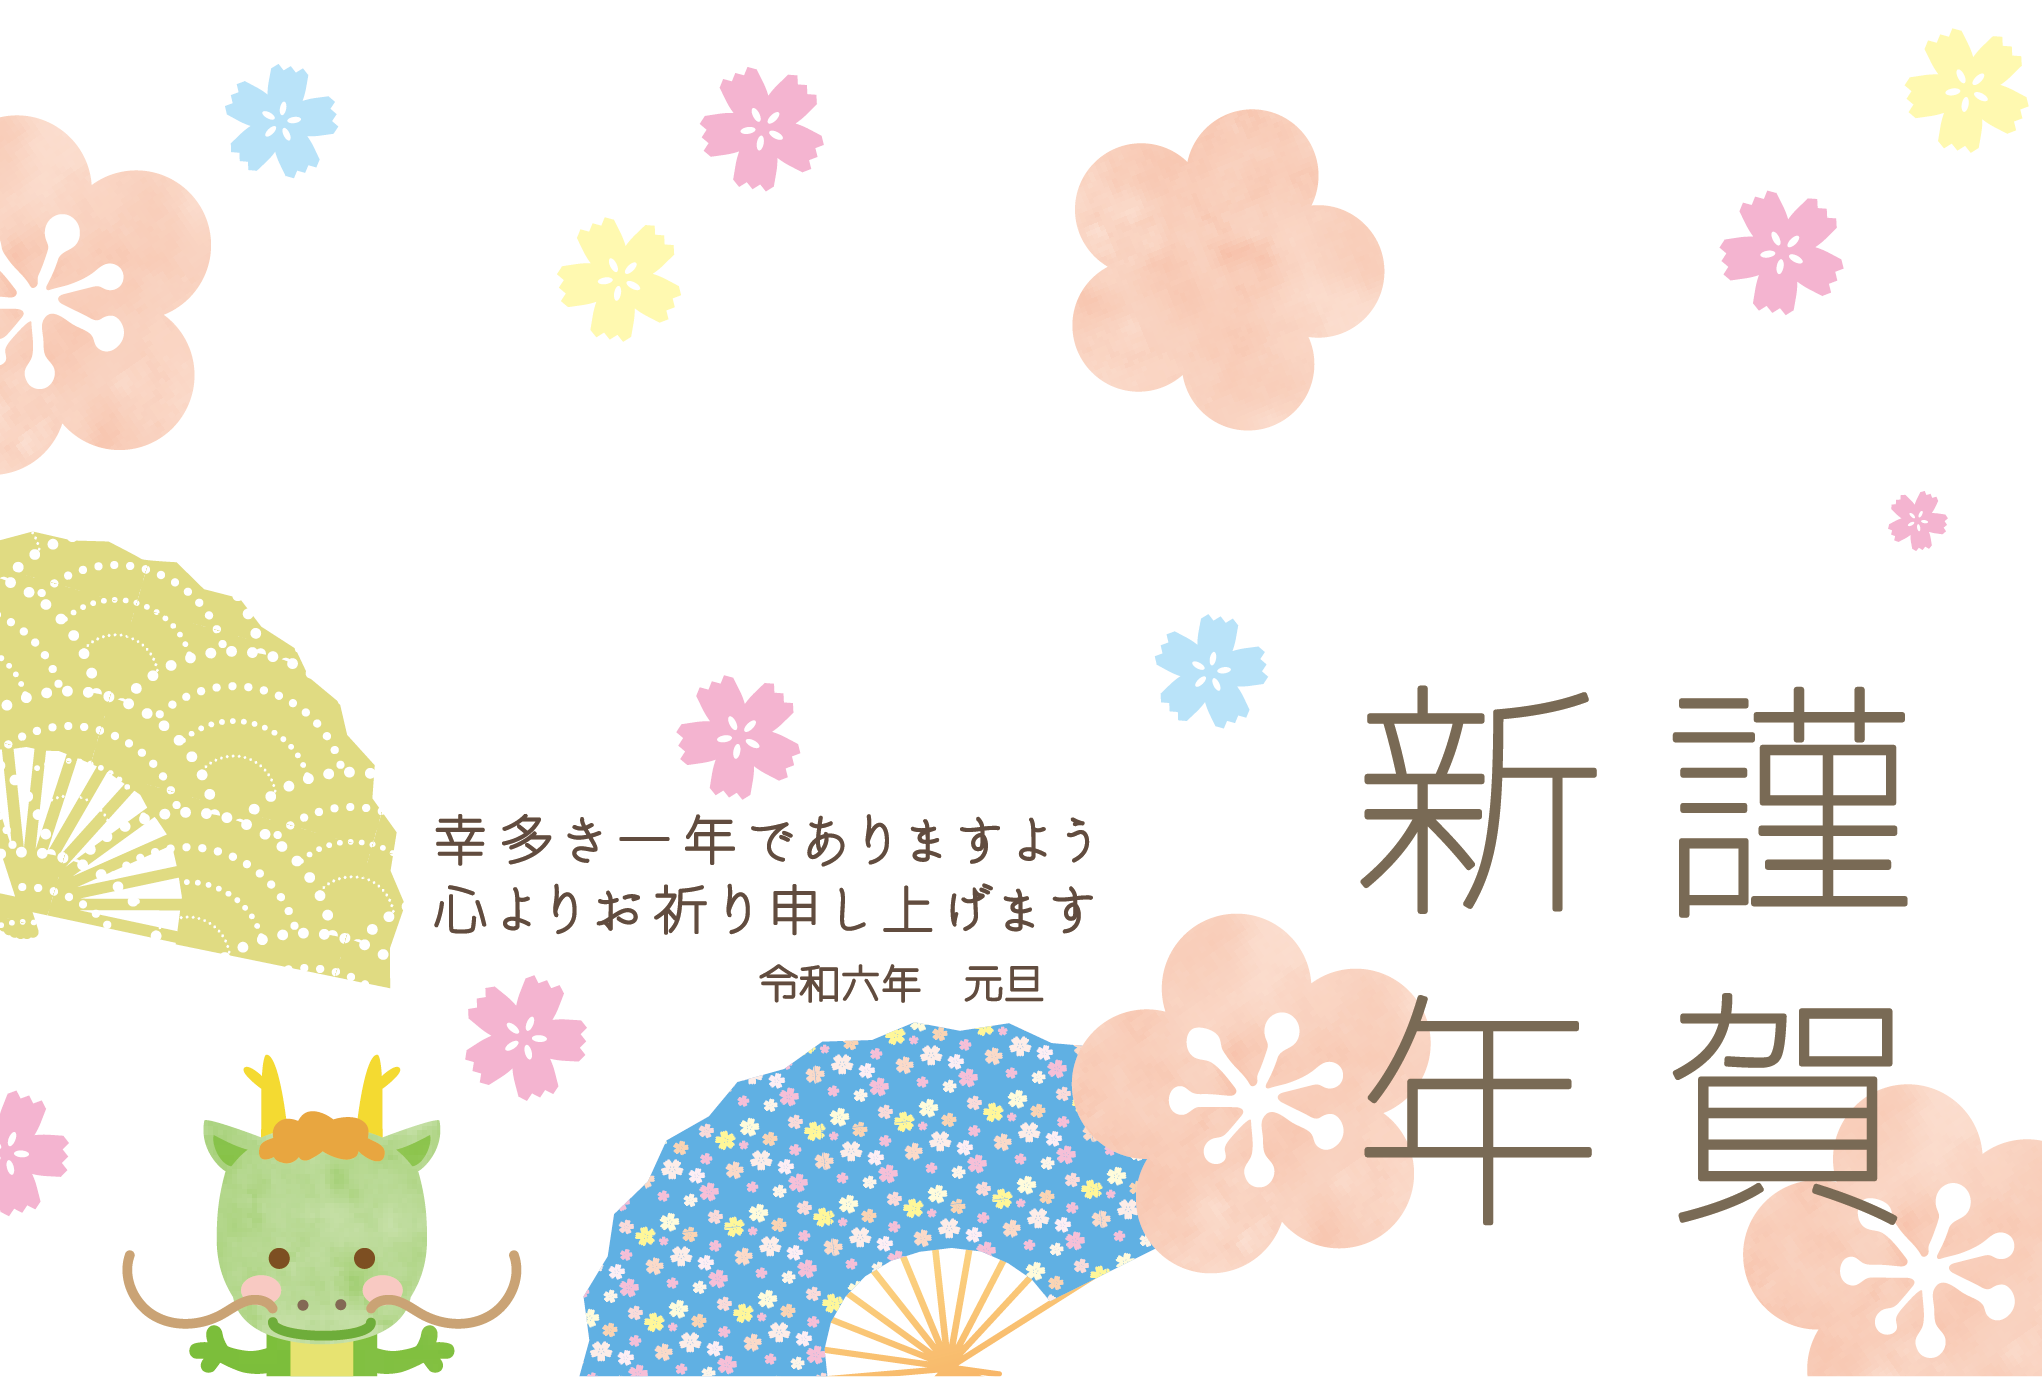 【写真フレーム】梅と桜でデザインした写真が3枚入る年賀状テンプレート